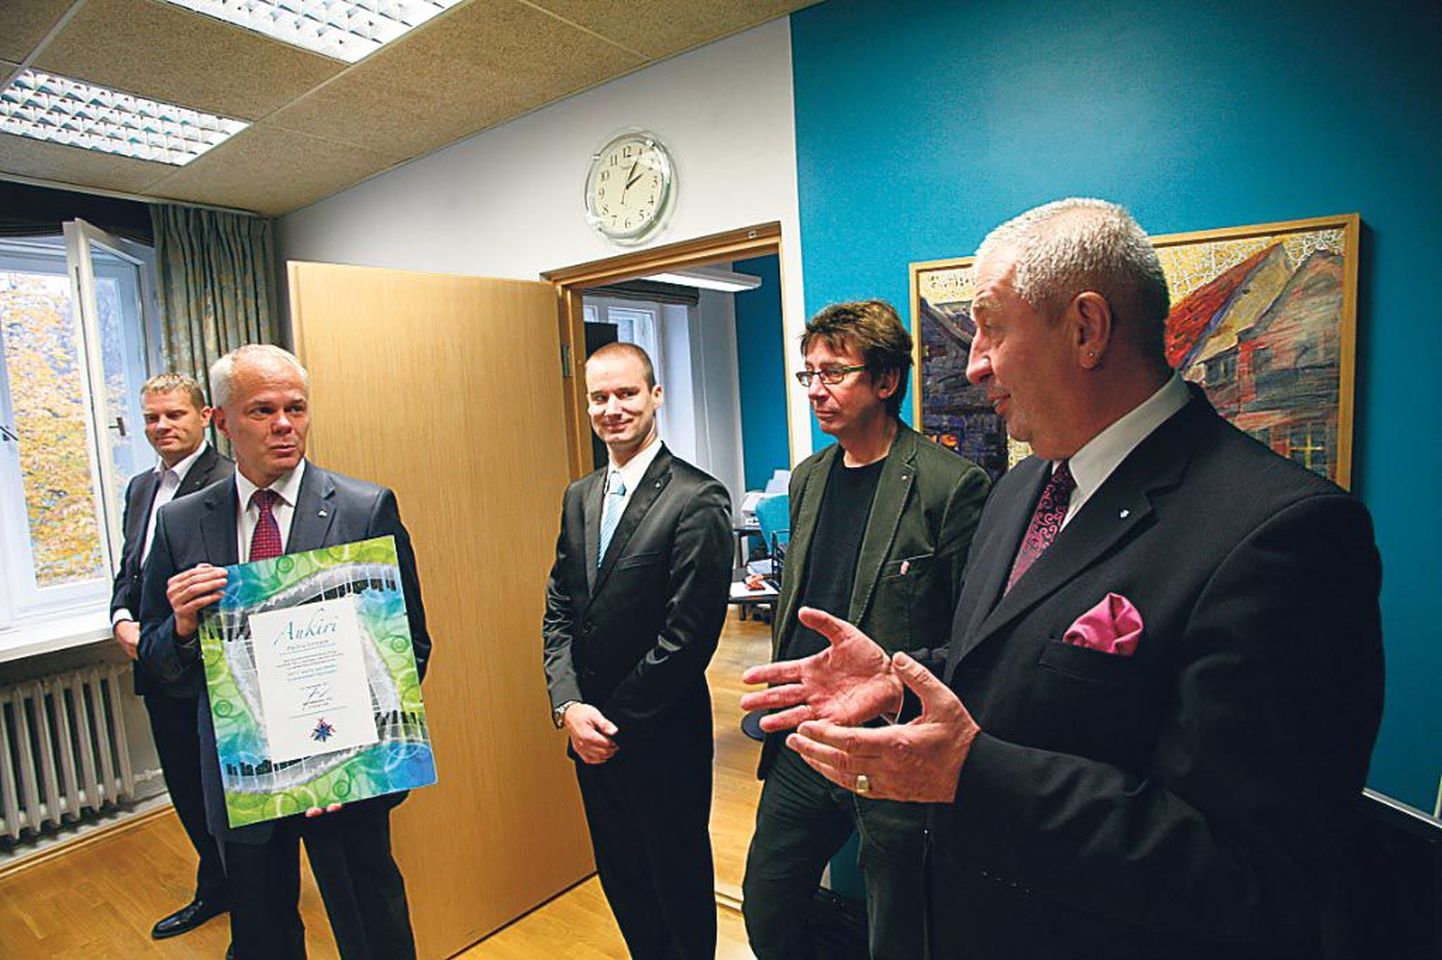 Parima kommunaalrajatise tunnustusega kaasas käiva kastekannu vastu võtnud Pärnu linnapea Toomas Kivimägi nentis, et Vallikäärus kippuski muru kuivama.